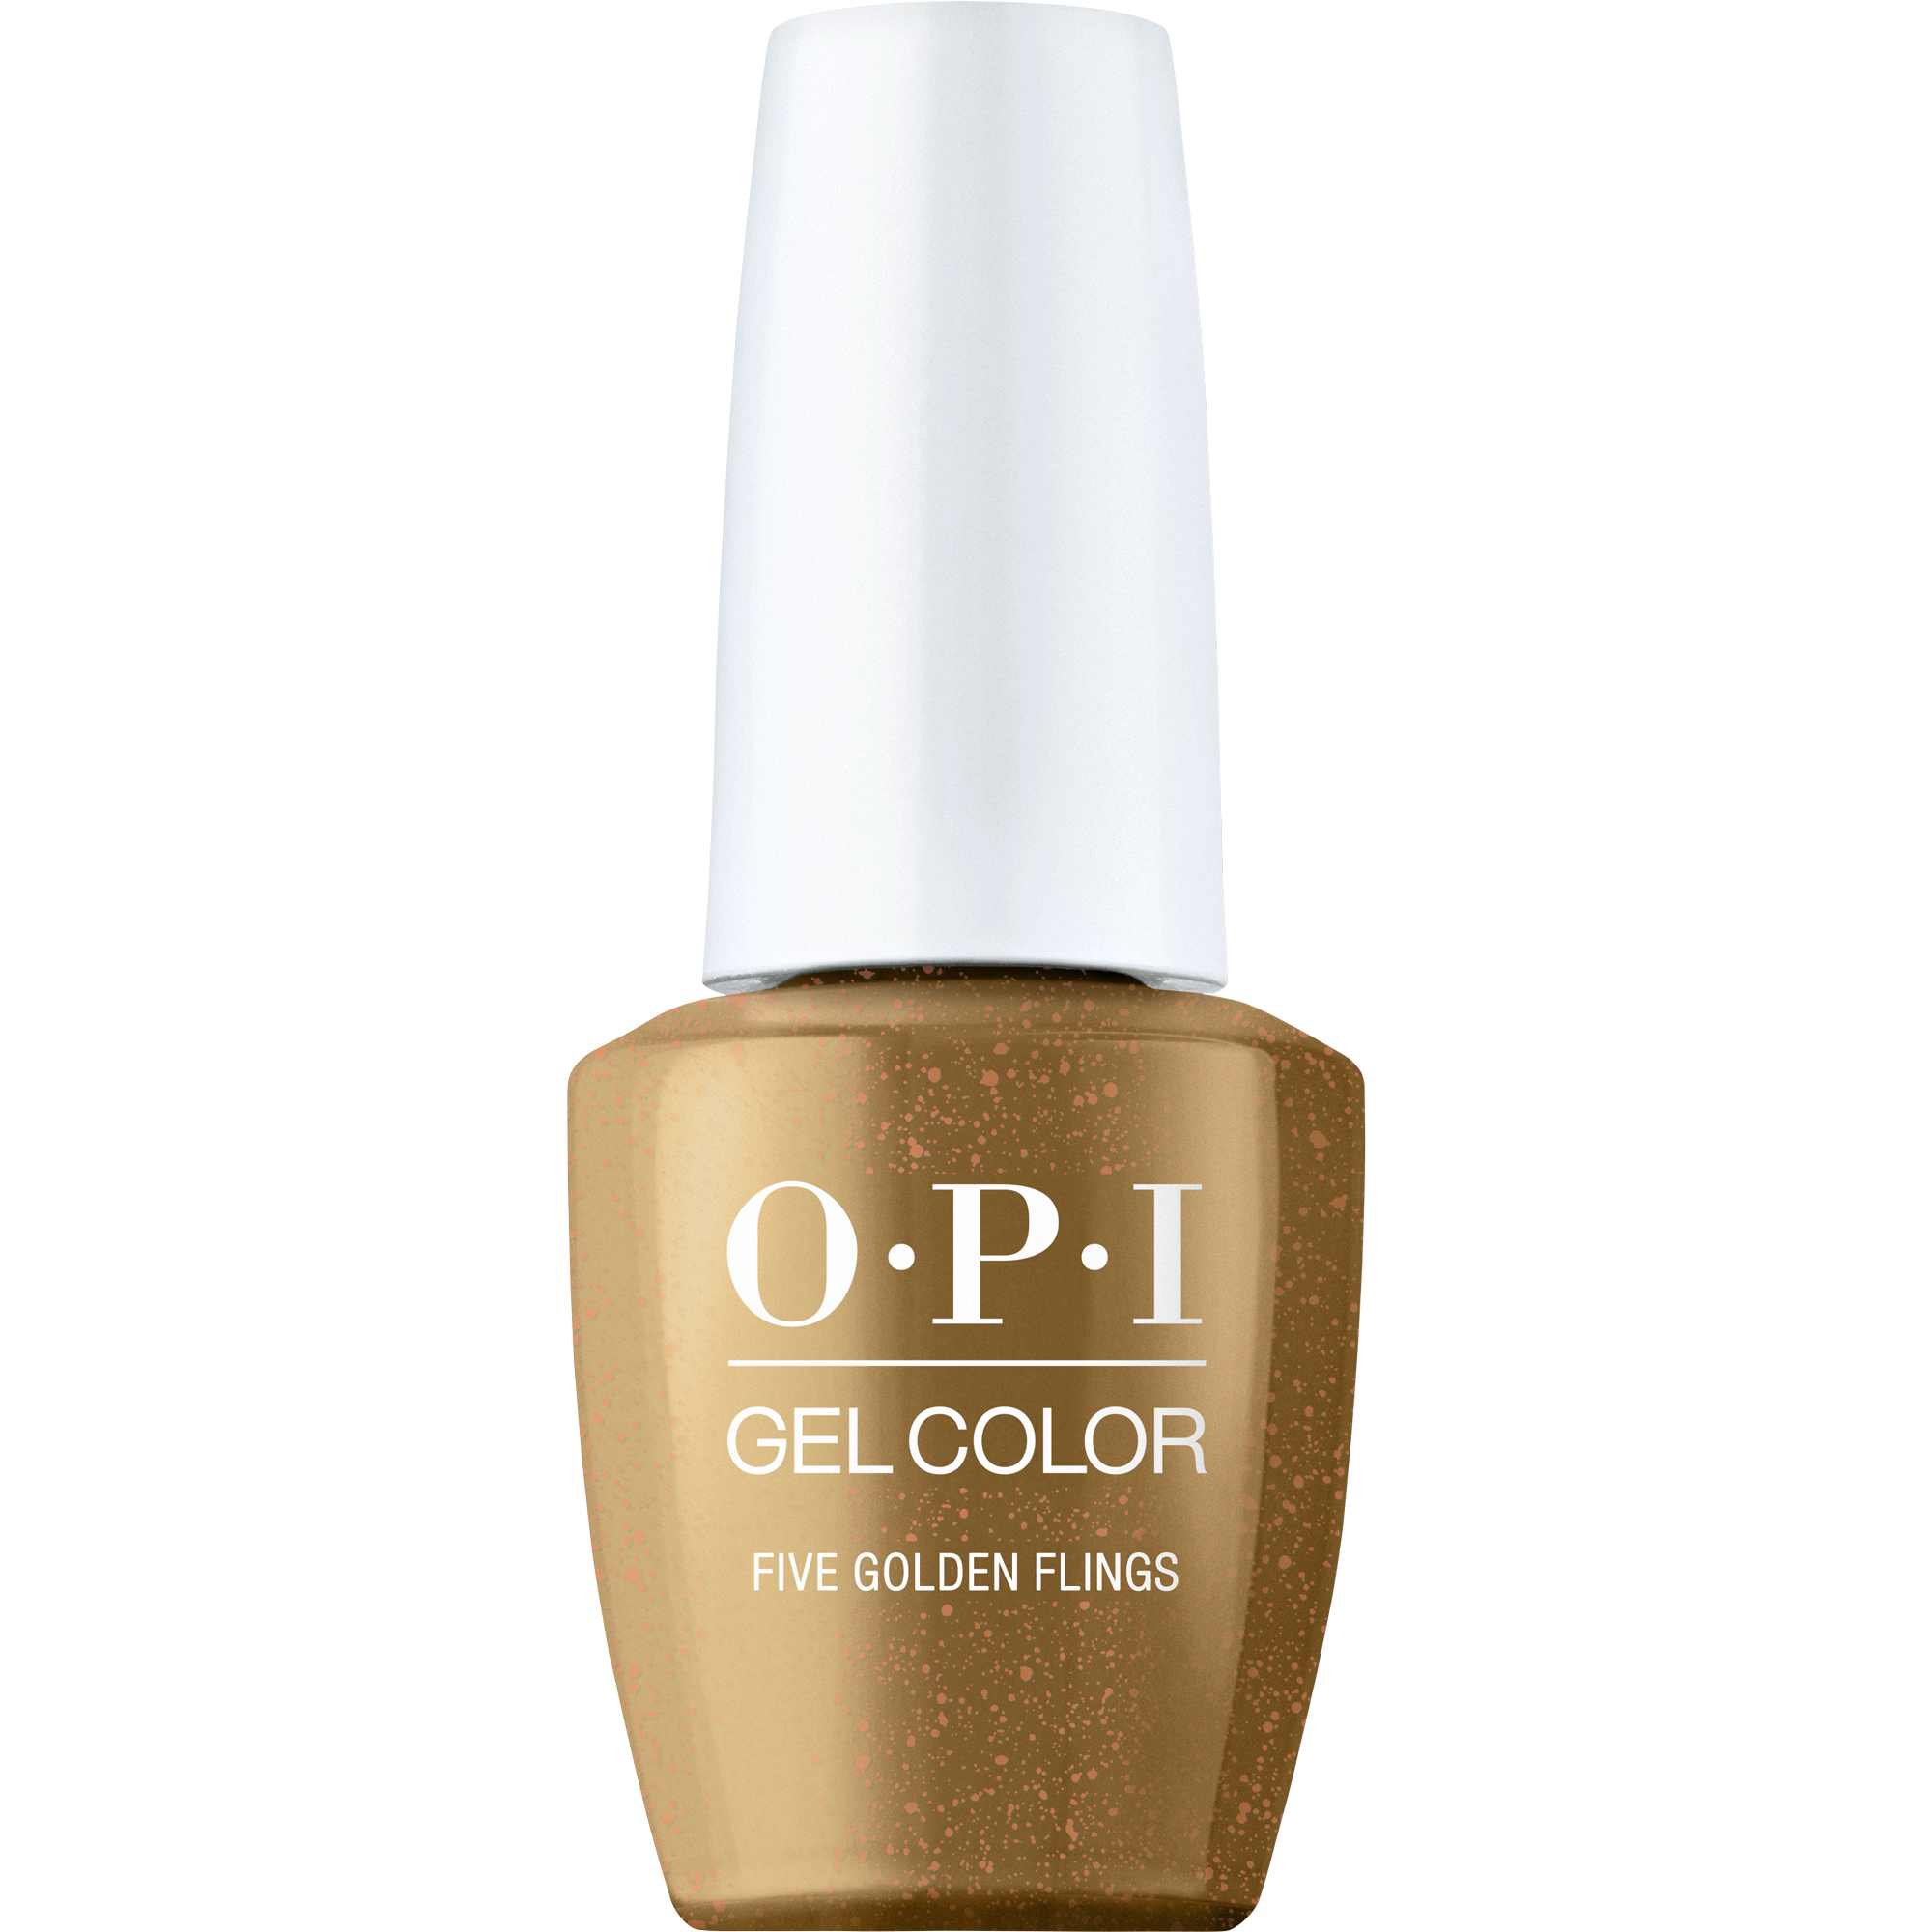 OPI Gel Color 360 - Five Golden Flings